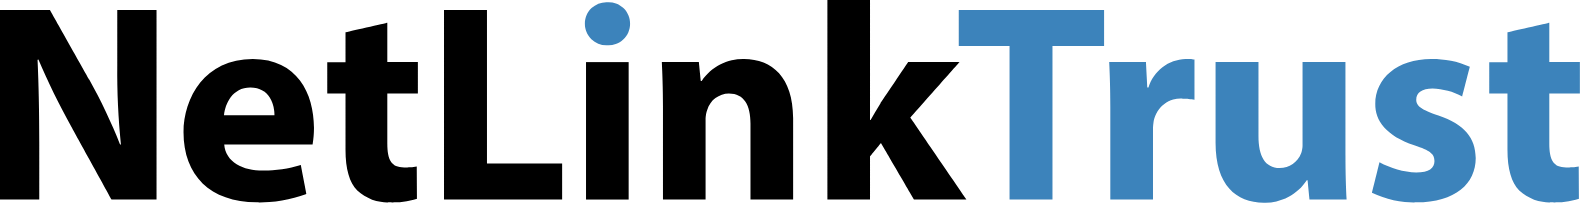 NetLink Trust logo large (transparent PNG)